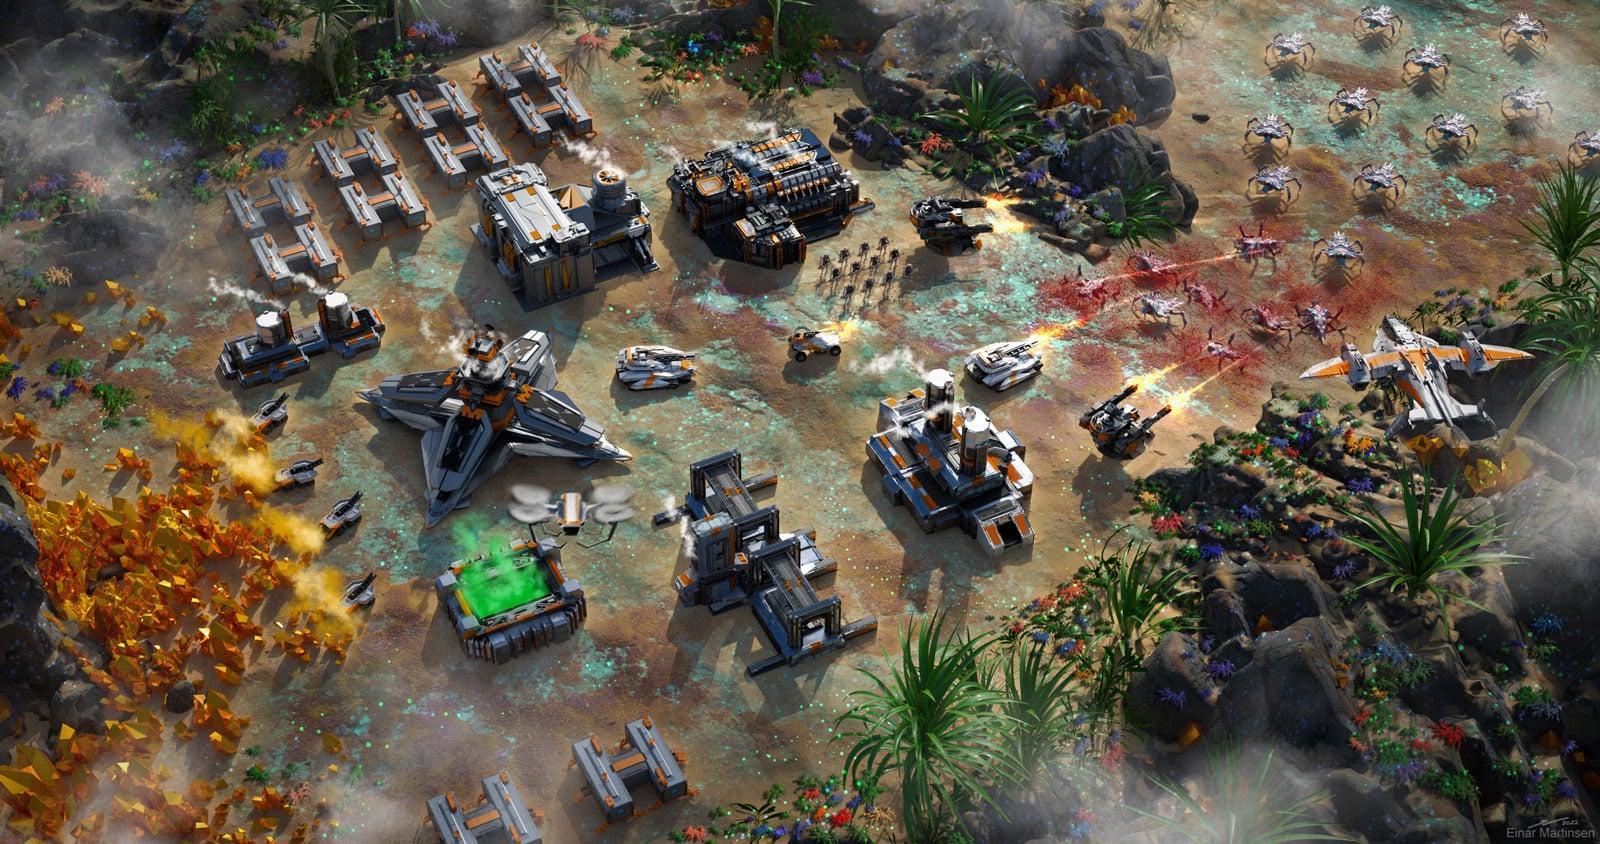 एक फ्री-टू-प्ले क्लासिक रीयल-टाइम रणनीति (आरटीएस) गेम जिसमें खिलाड़ी संसाधन इकट्ठा करते हैं, सेनाओं का नेतृत्व करते हैं, और थालोन की विज्ञान-कल्पना की दुनिया में युद्ध में शामिल होते हैं।